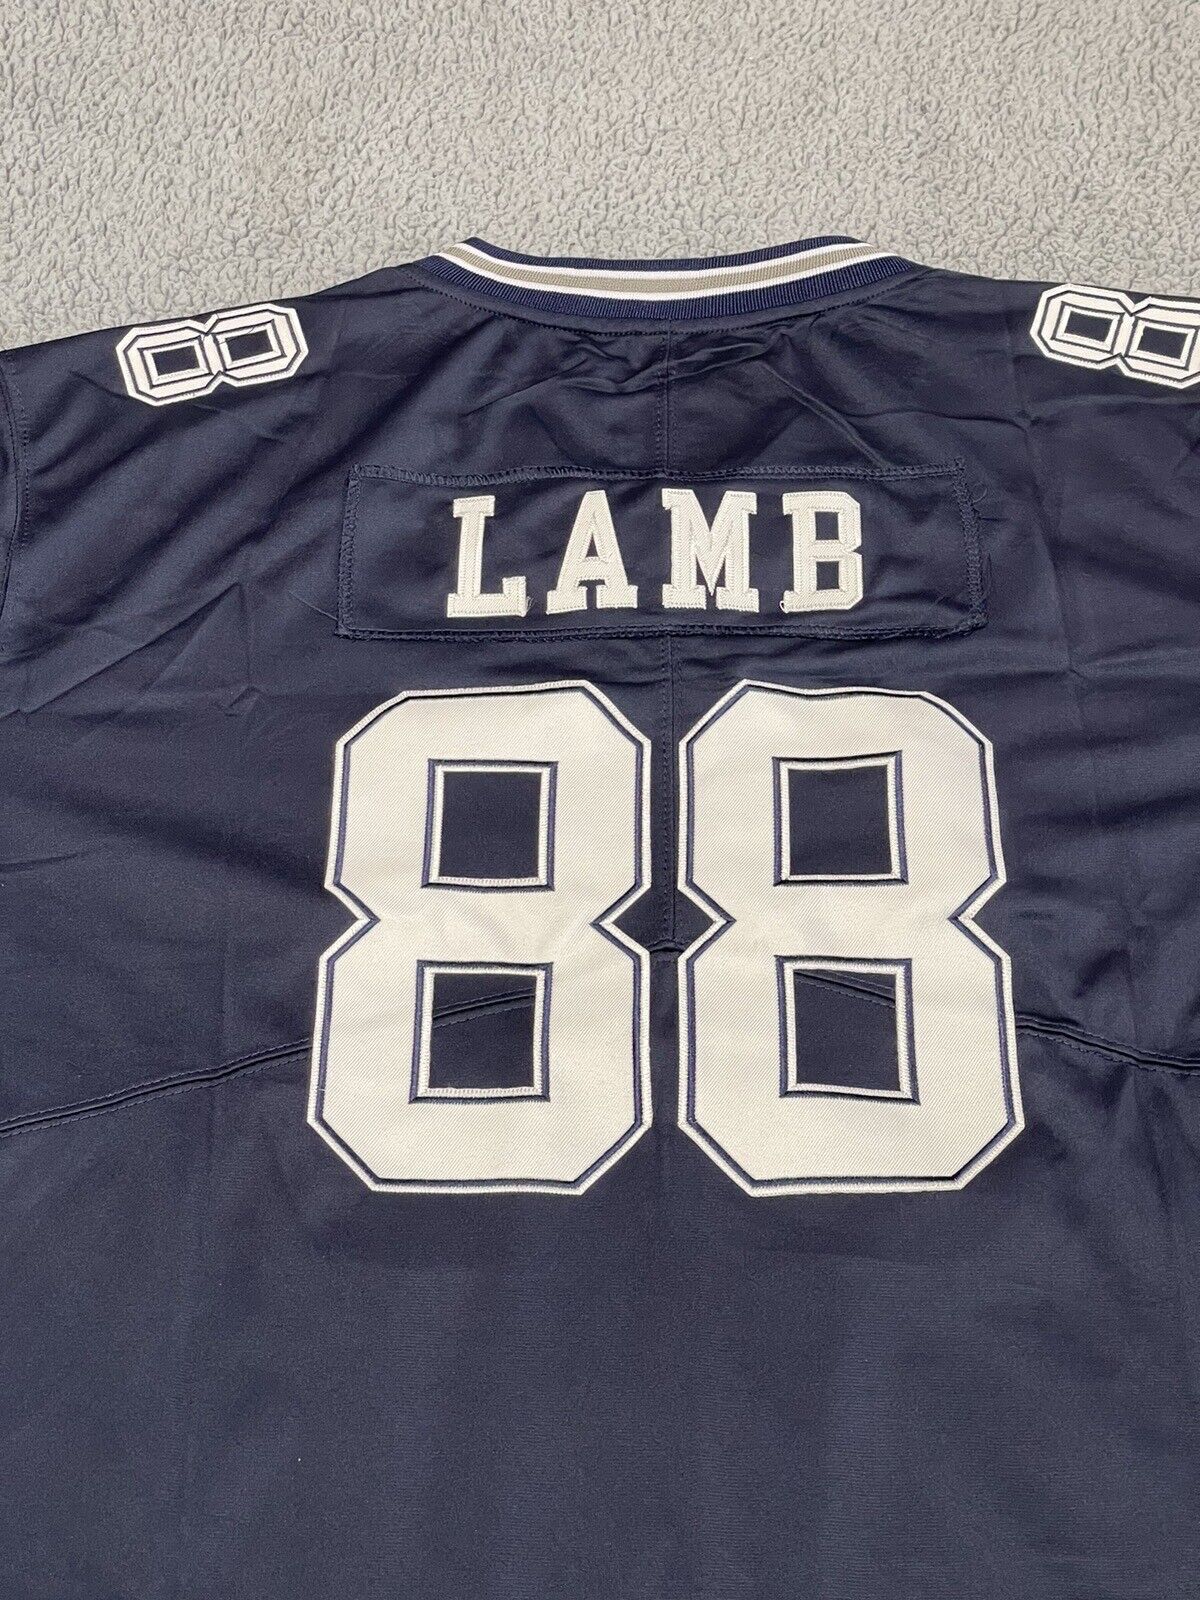 Dallas Cowboys CeeDee Lamb Jersey Blue 2XL XXL #88 Stitched NEW Football NFL Big